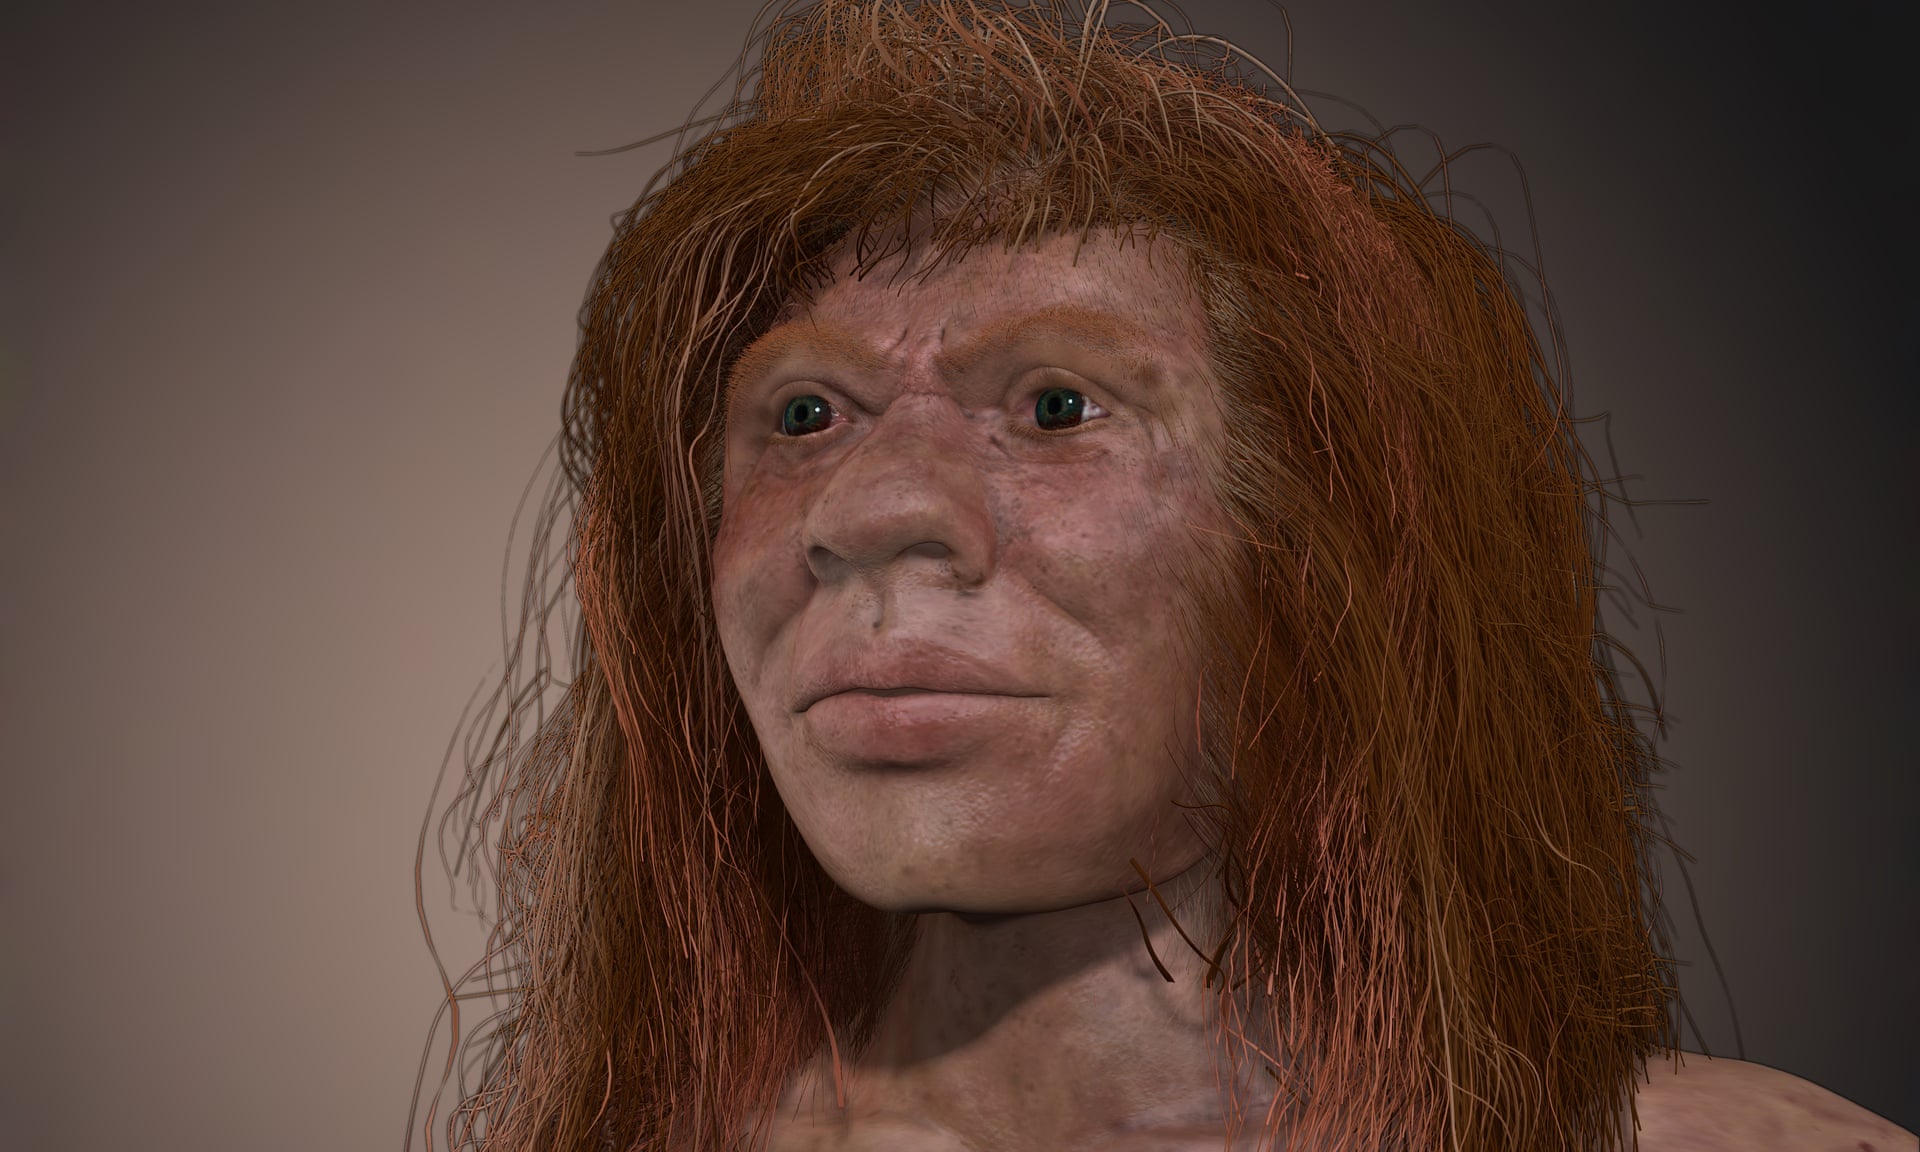 Денні, таємнича дитина 90,000 2 років тому, батьки якої були двома різними видами людей XNUMX